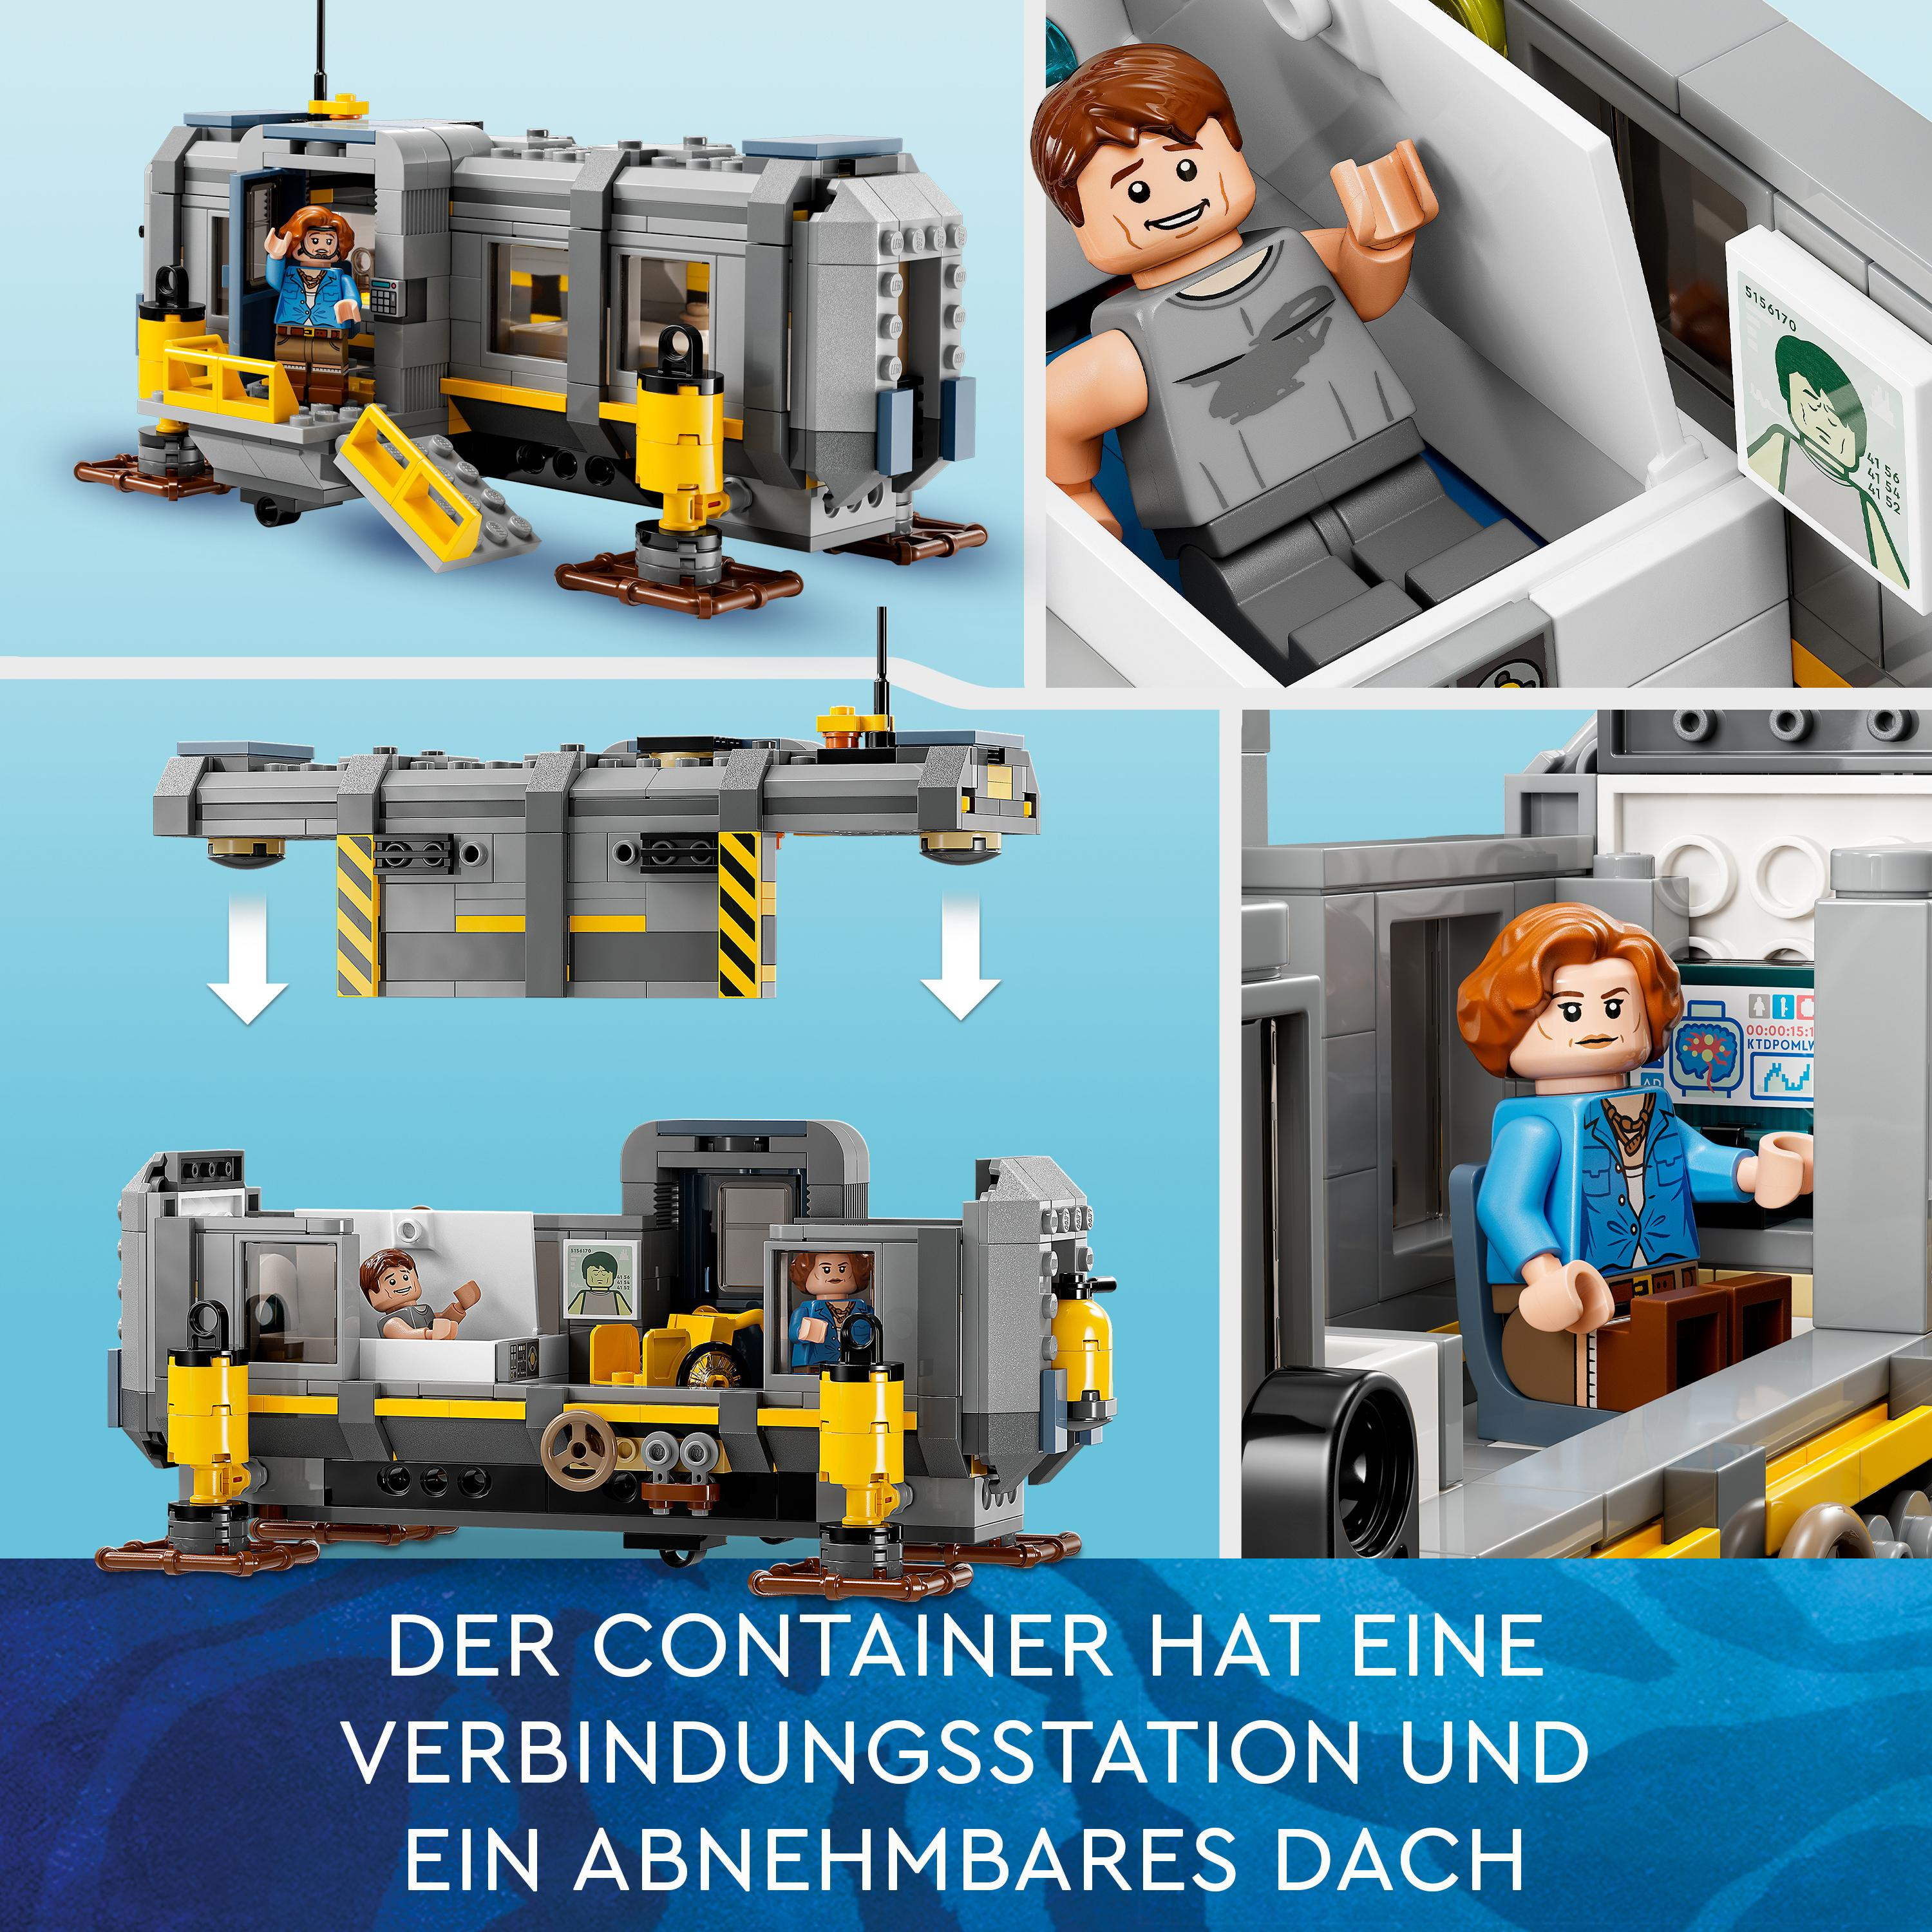 Avatar RDA Berge: und Site Bausatz, Samson 75573 Mehrfarbig Schwebende LEGO 26